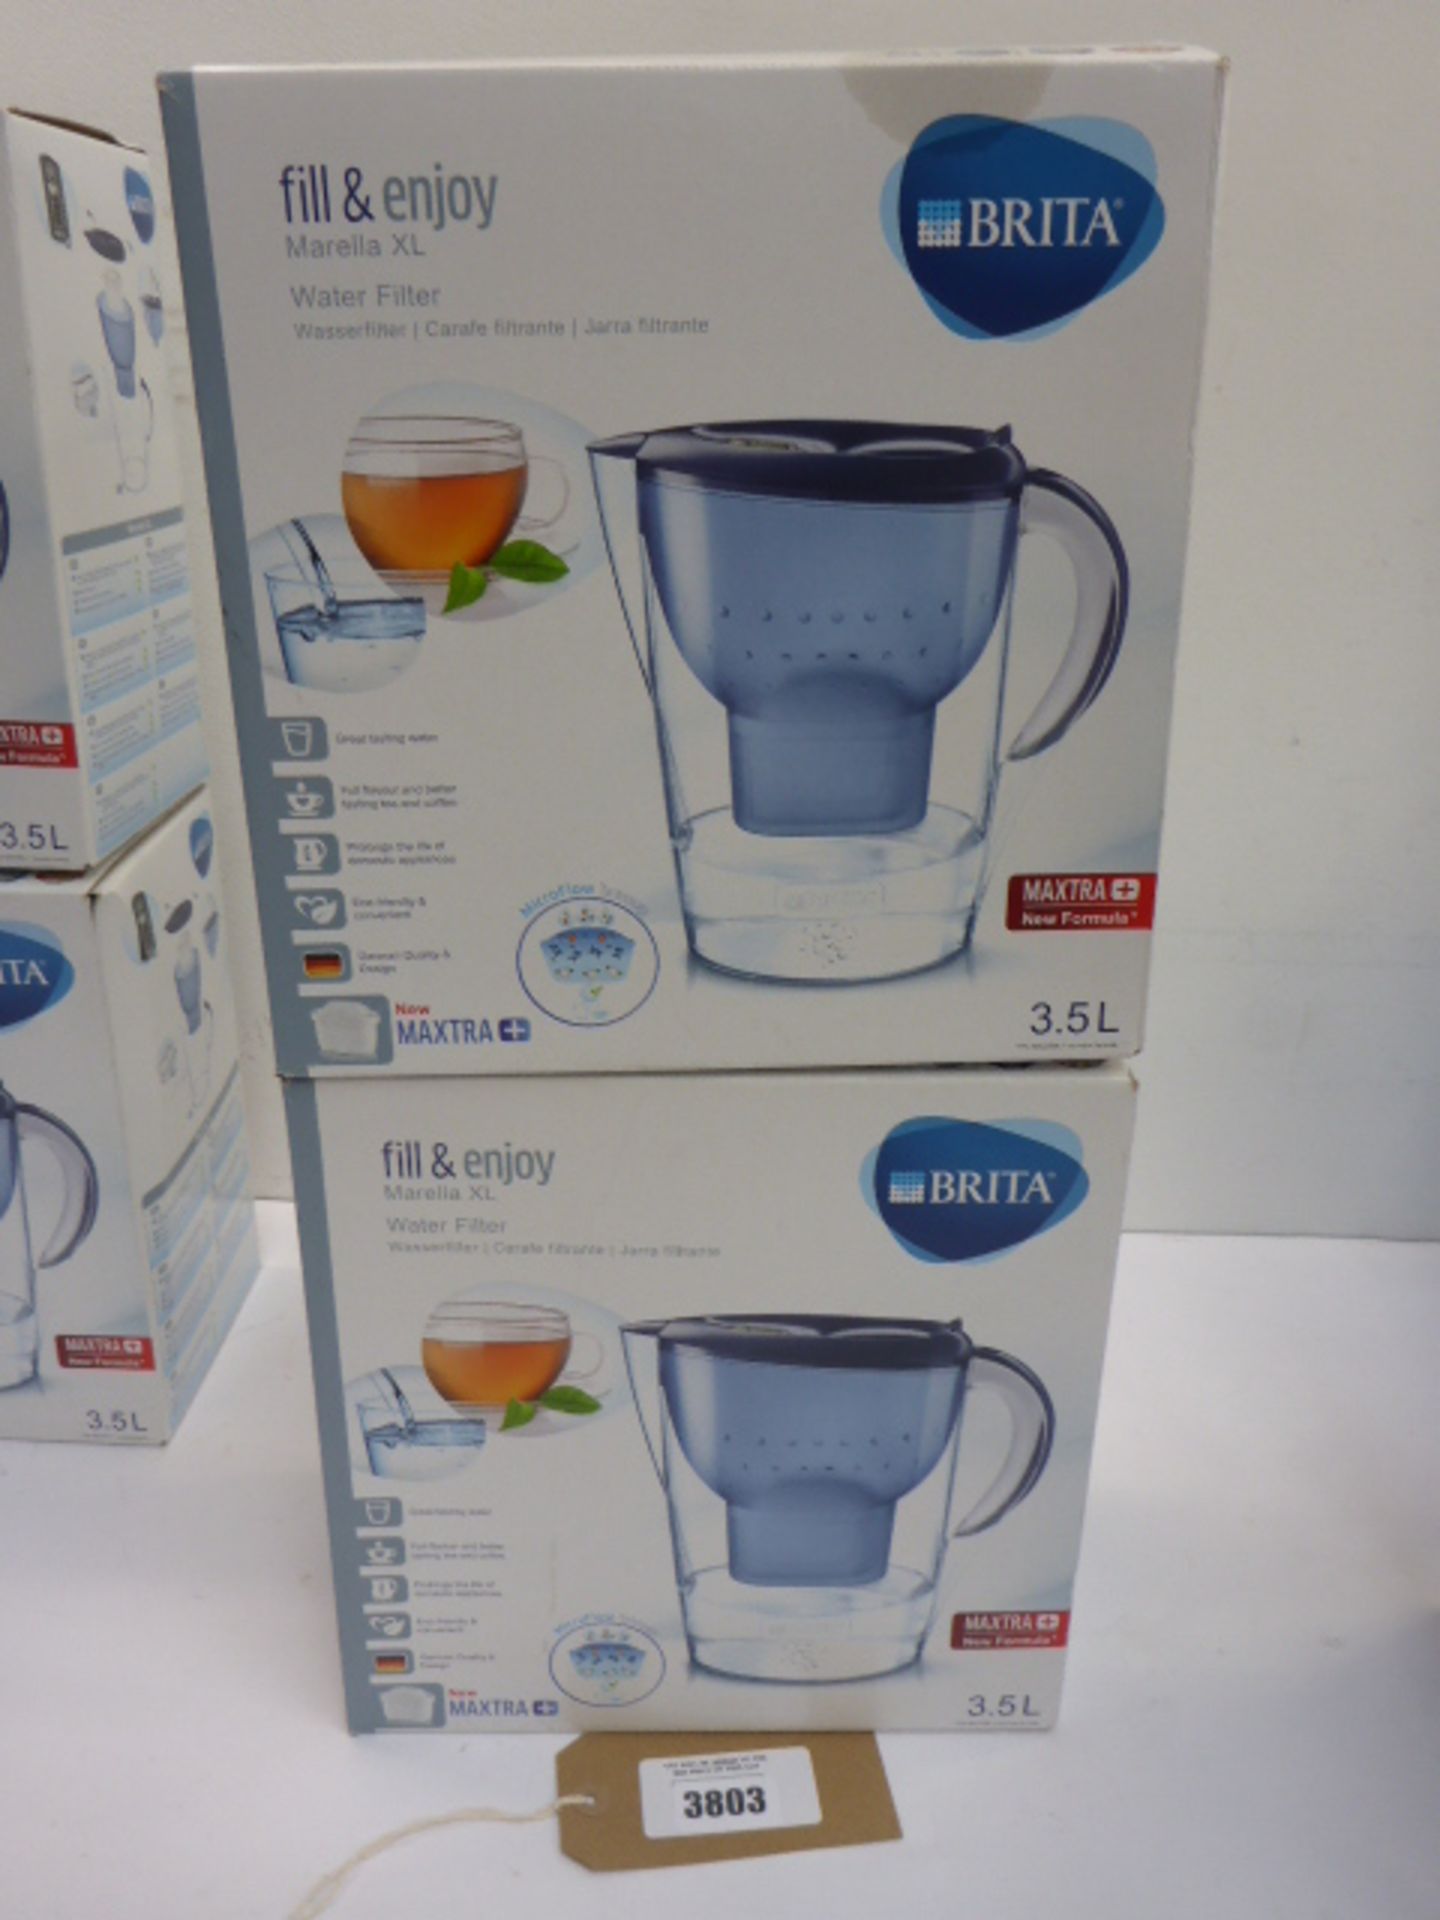 2x Brita Marella XL water filters